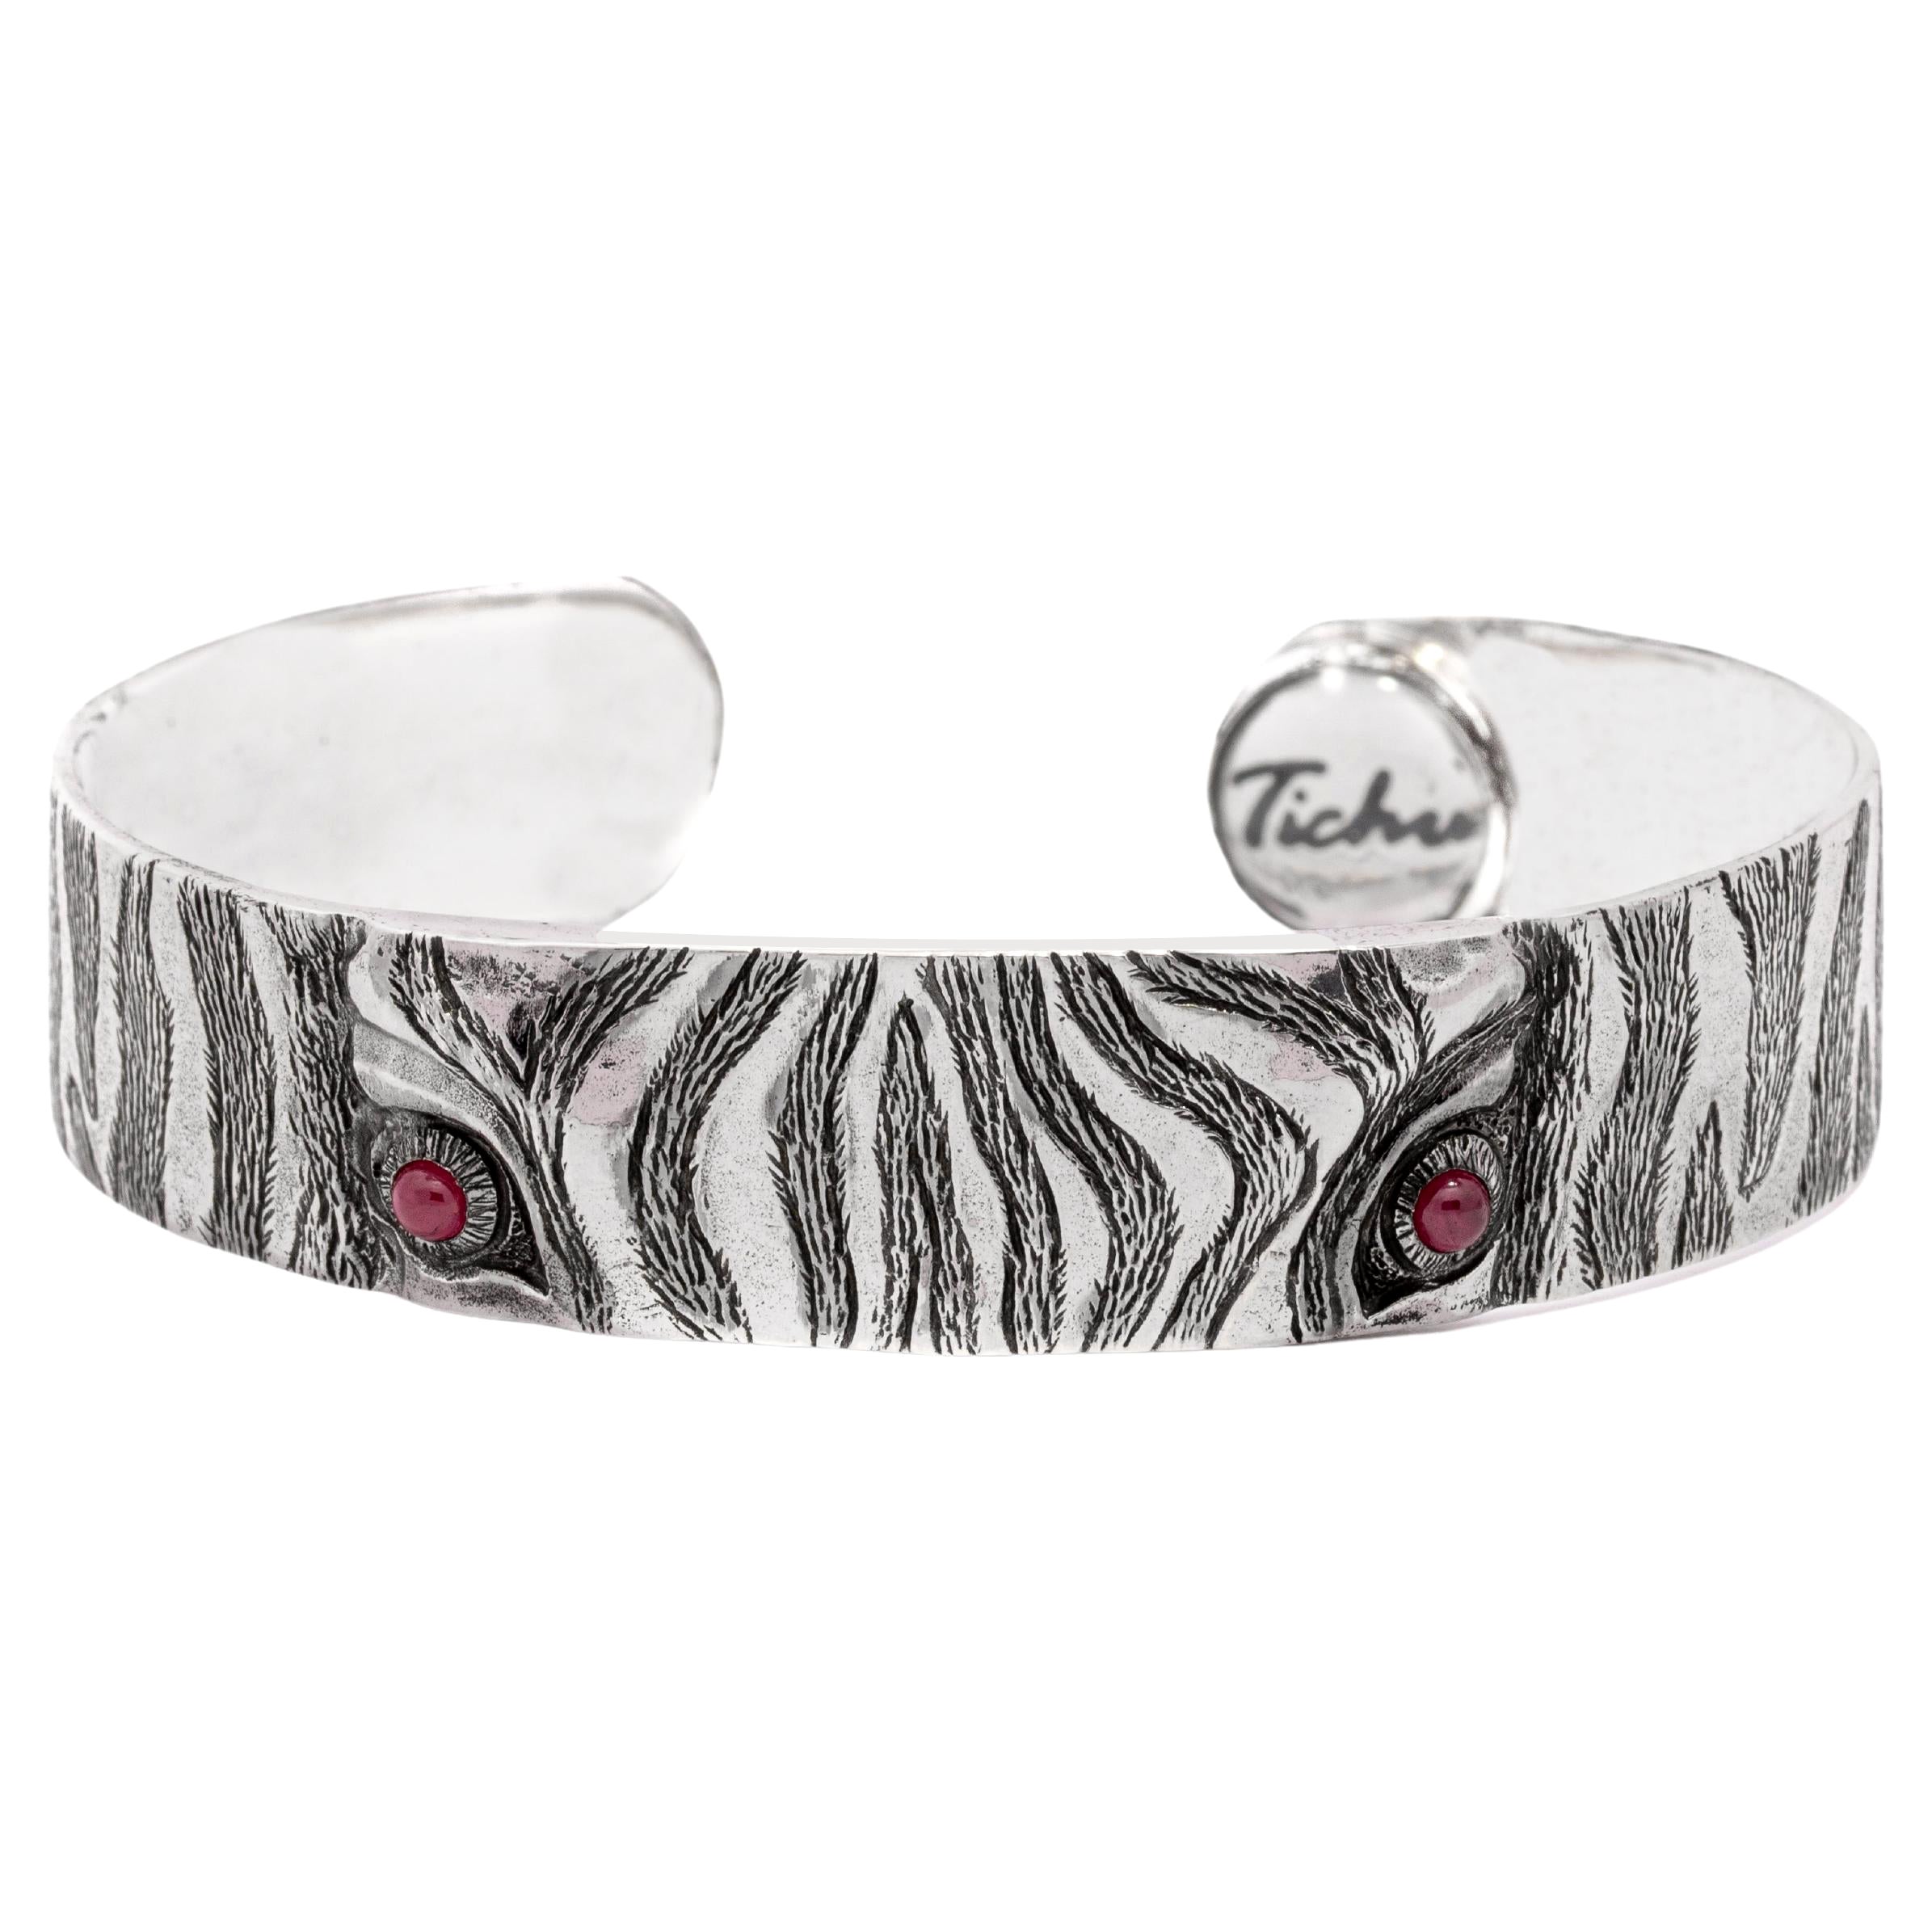 Tichu Ruby Zebra Eye Cuff Sterling Silver and Crystal Quartz Size L